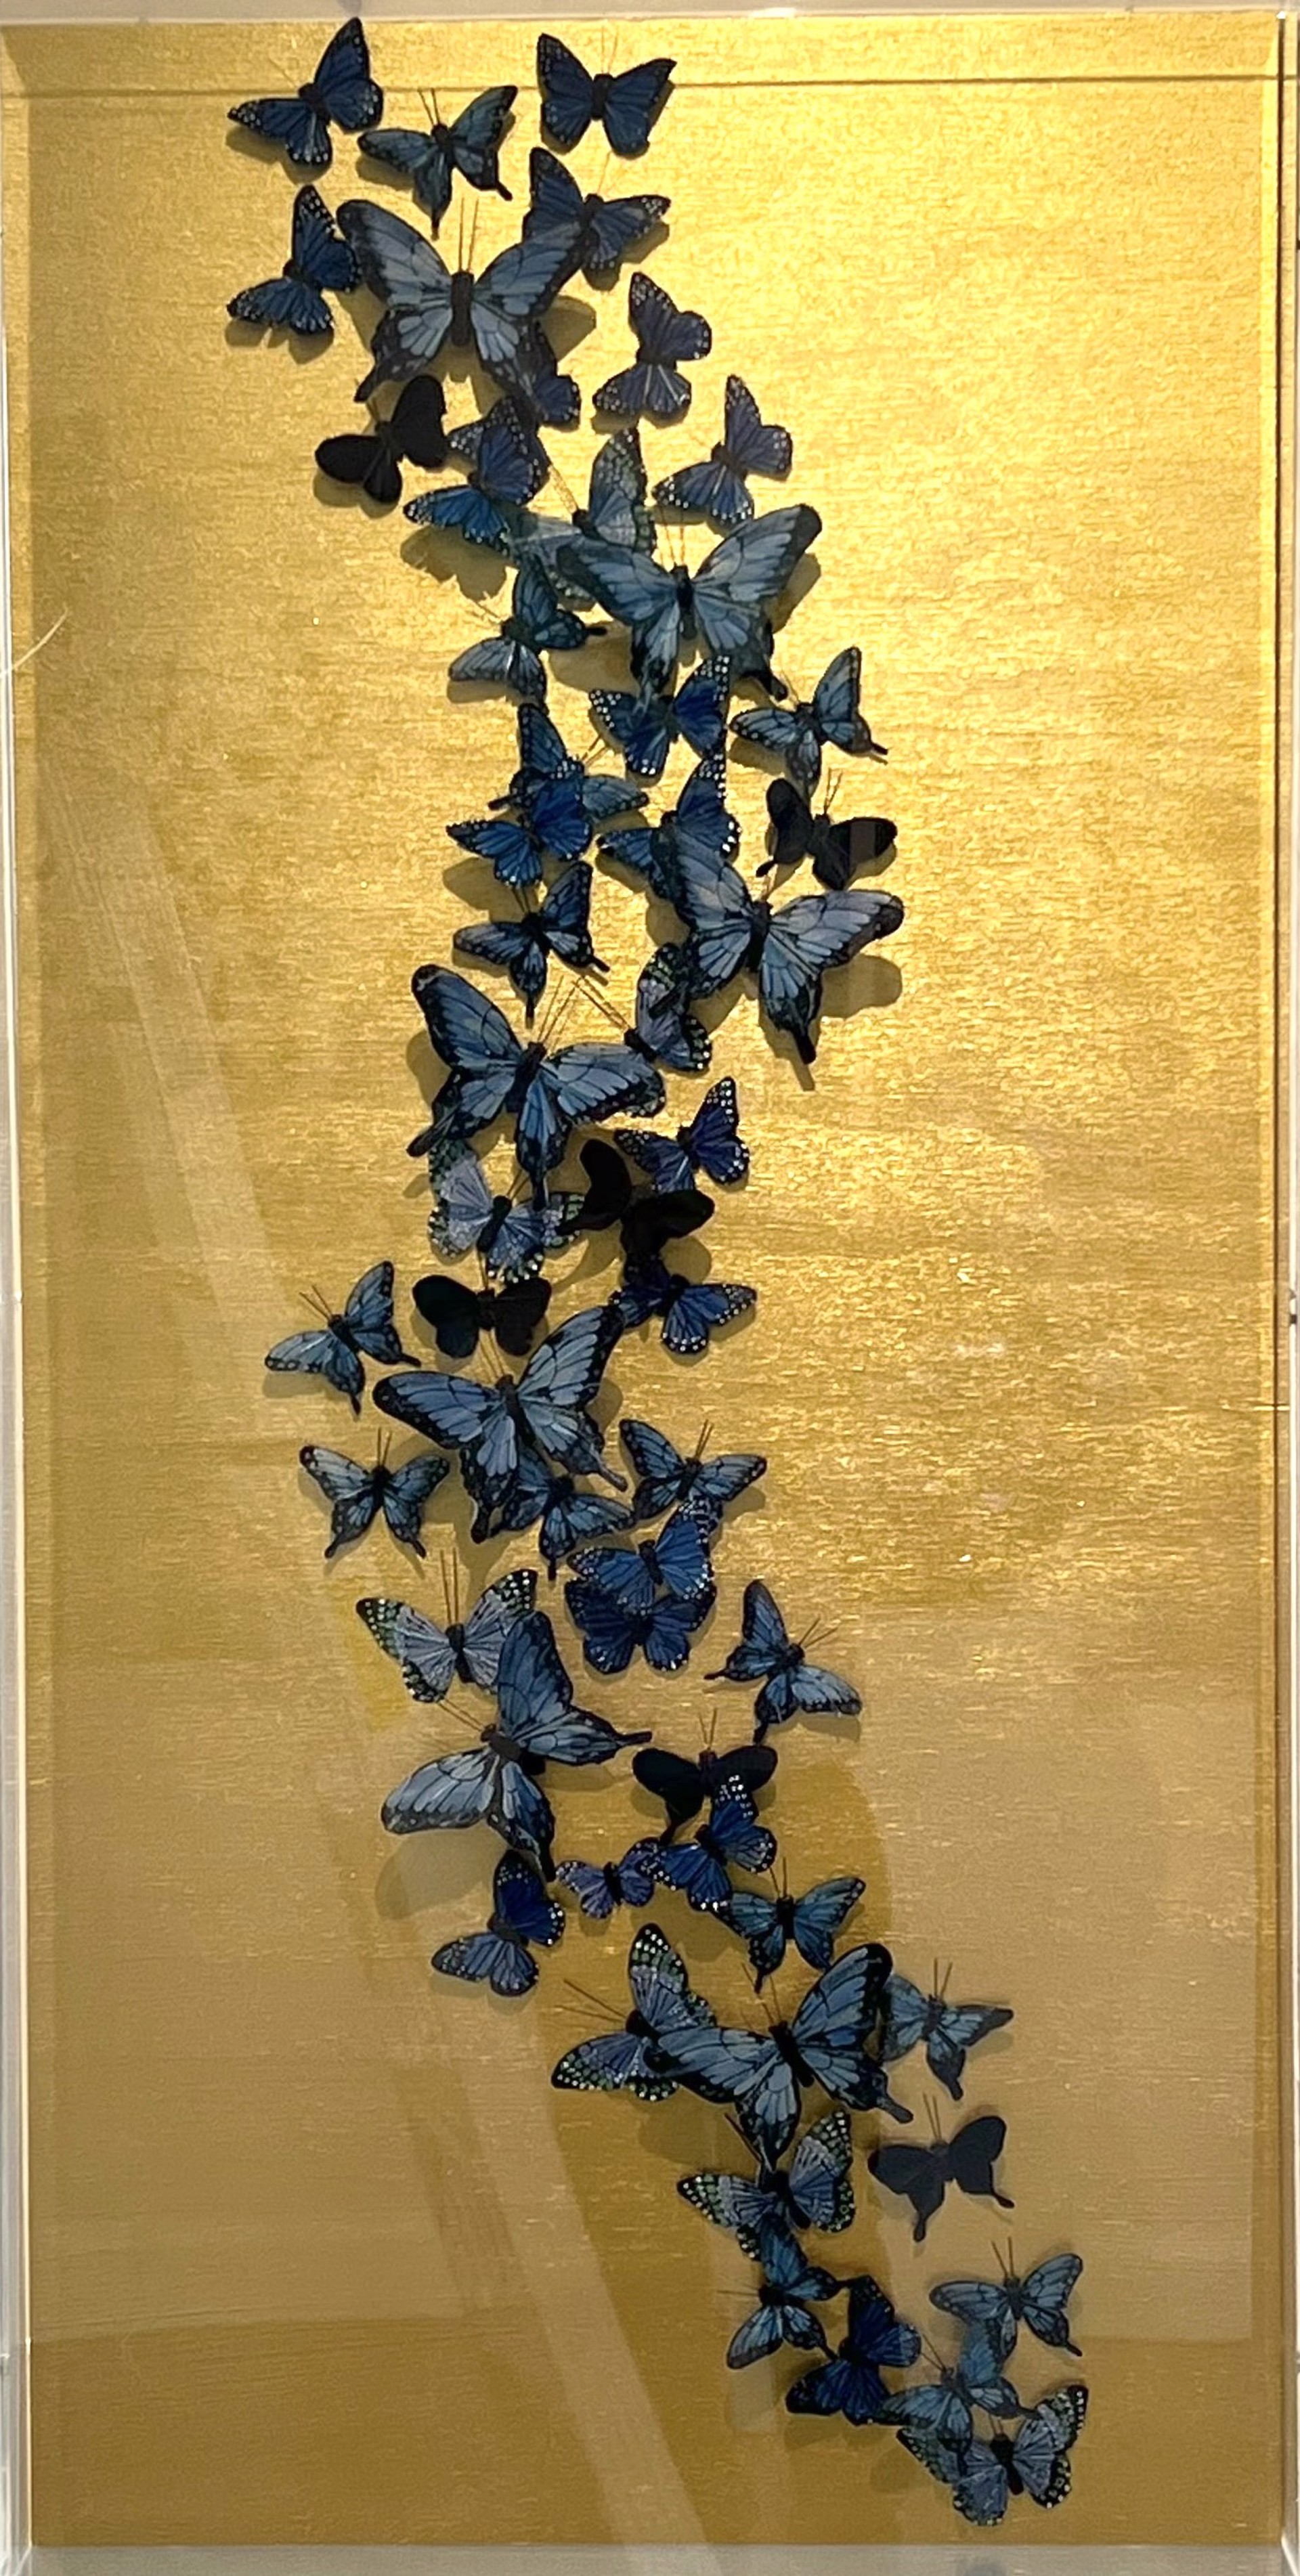 Midas in Blue by Vangelis